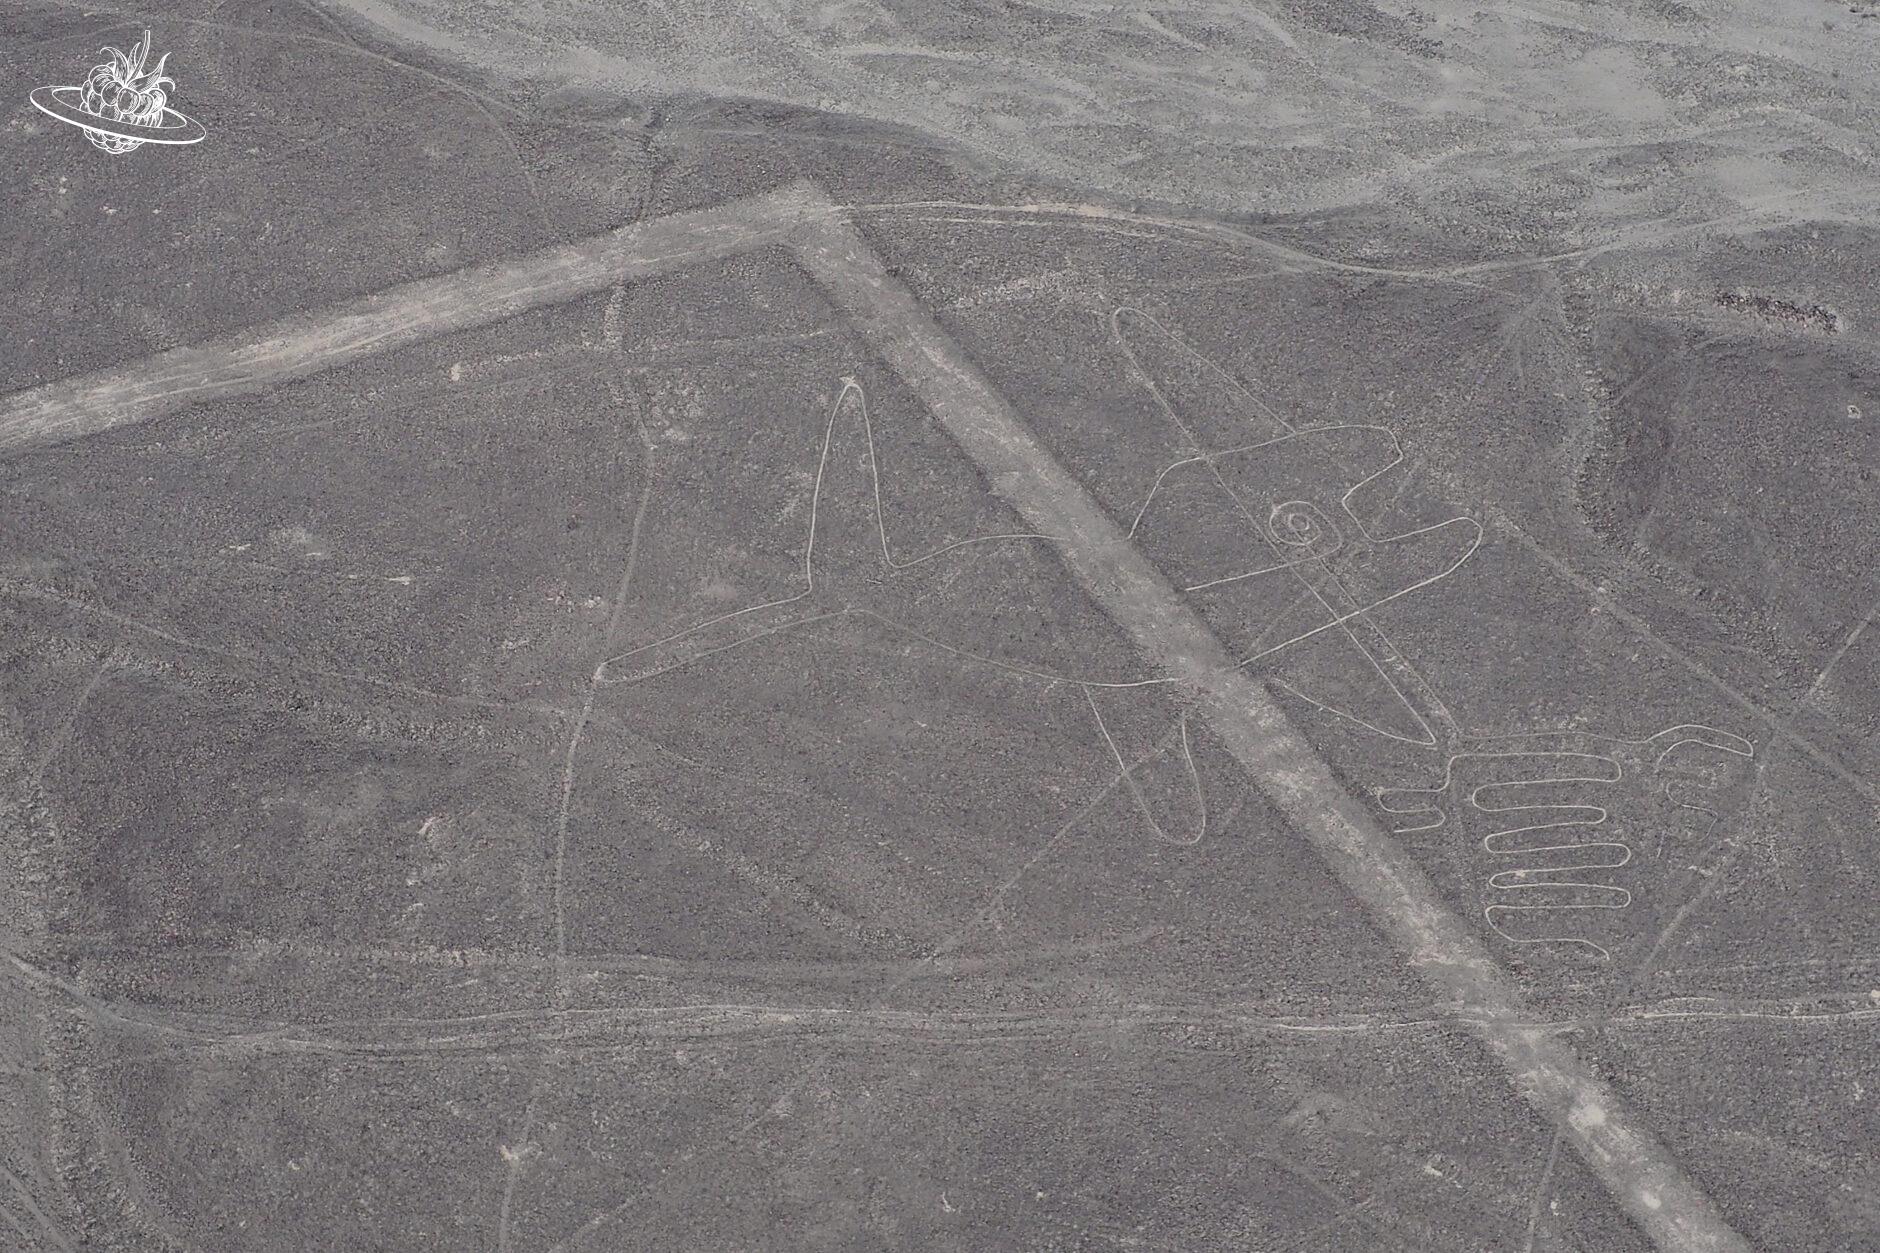 Die Figur "Wal" in der Wüste von Nazca